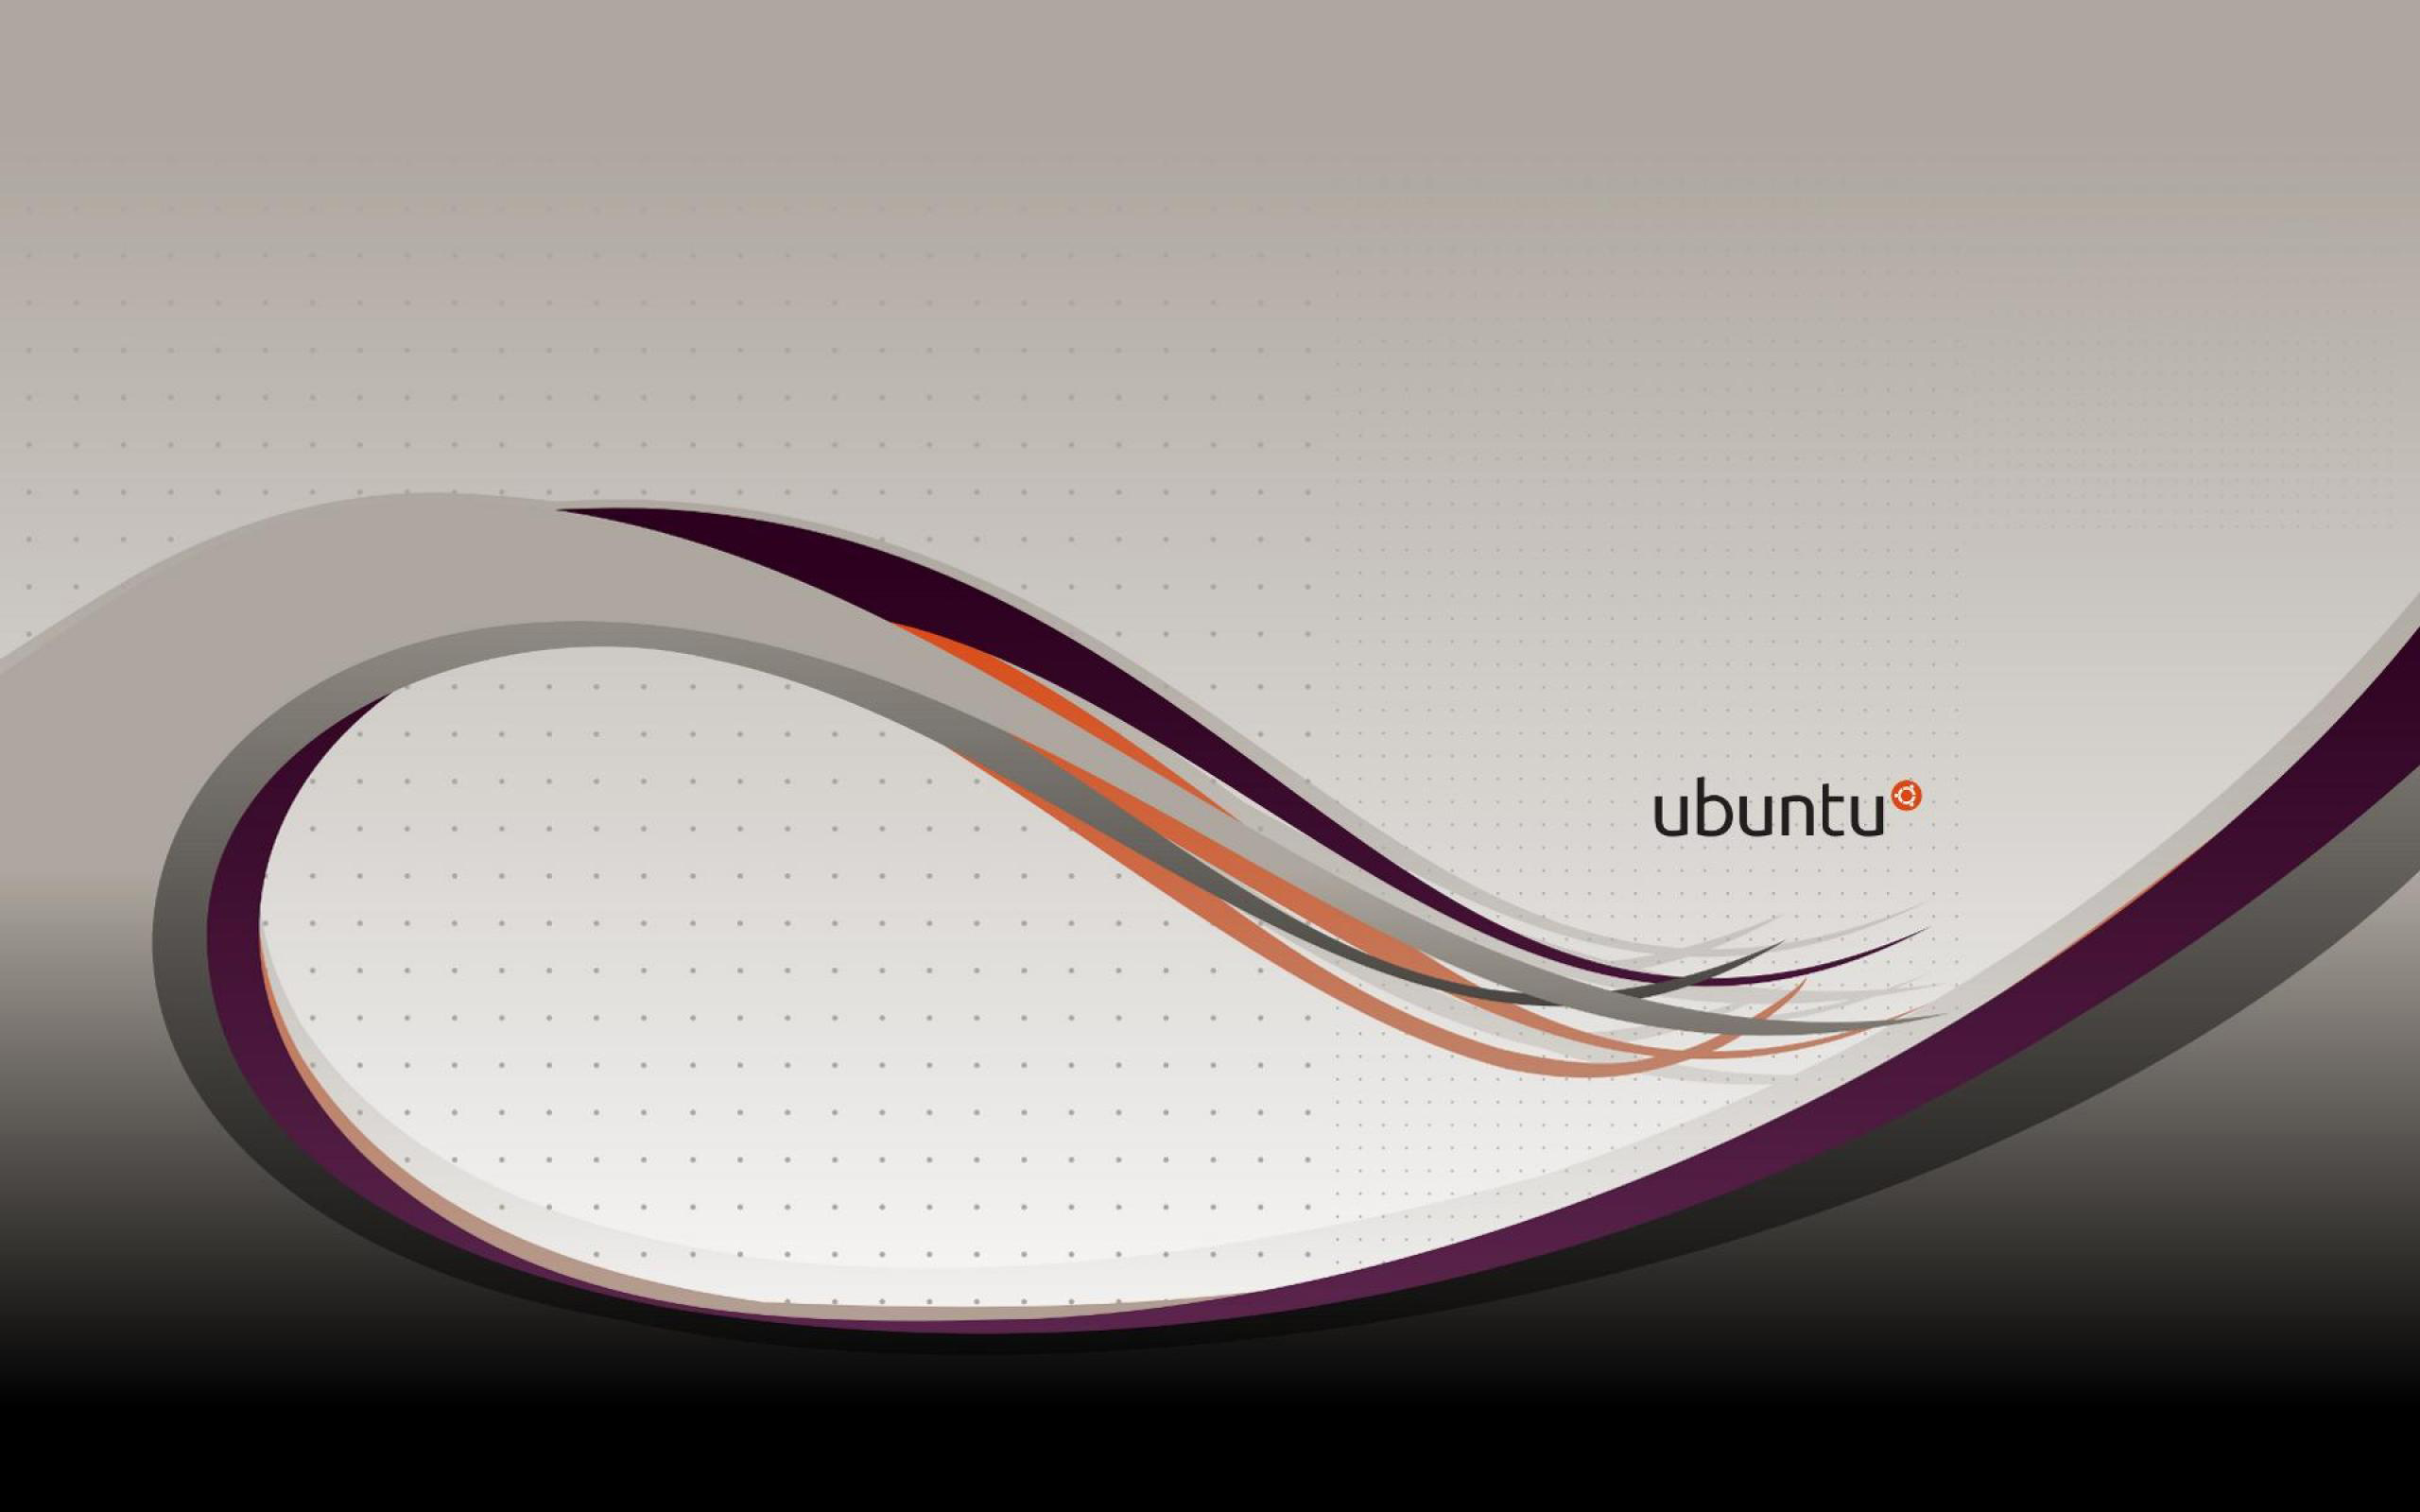  Ubuntu  Wallpapers  HD Desktop  PixelsTalk Net